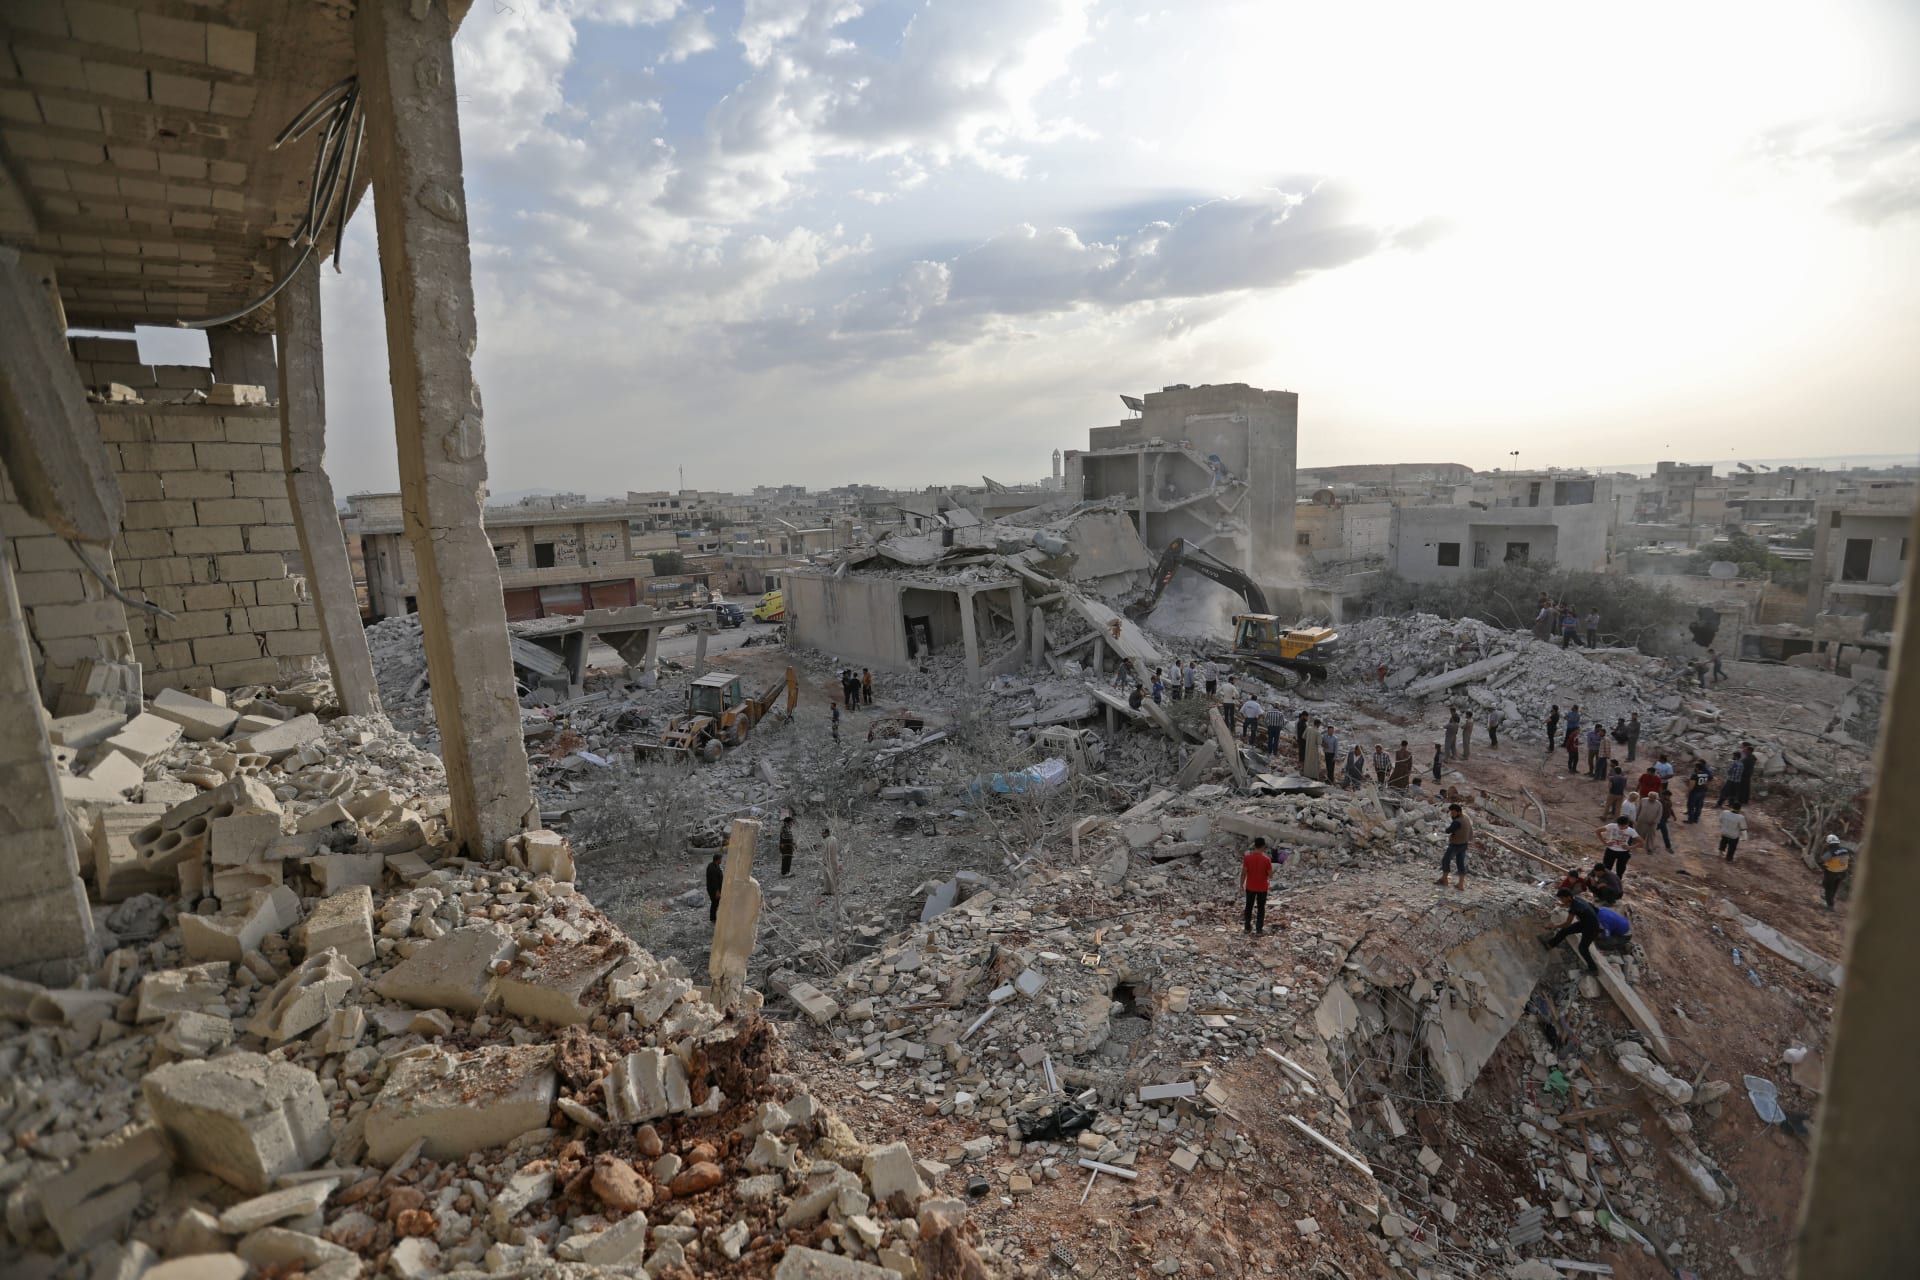  الخارجية الروسية: تحضيرات لمشهد تمثيلي حول هجوم كيماوي في إدلب 